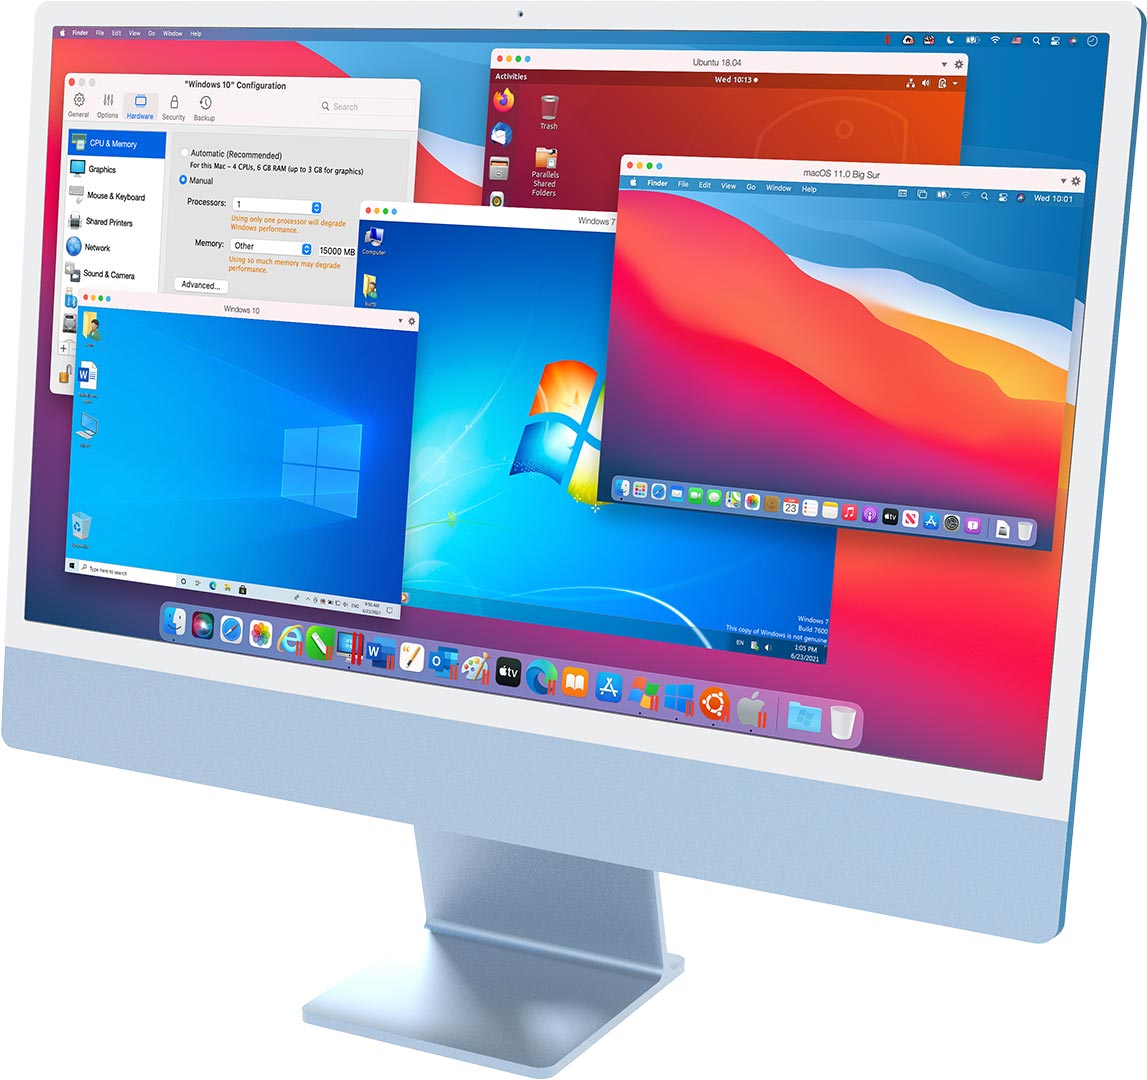 parallels desktop 13 for mac v13 serial number